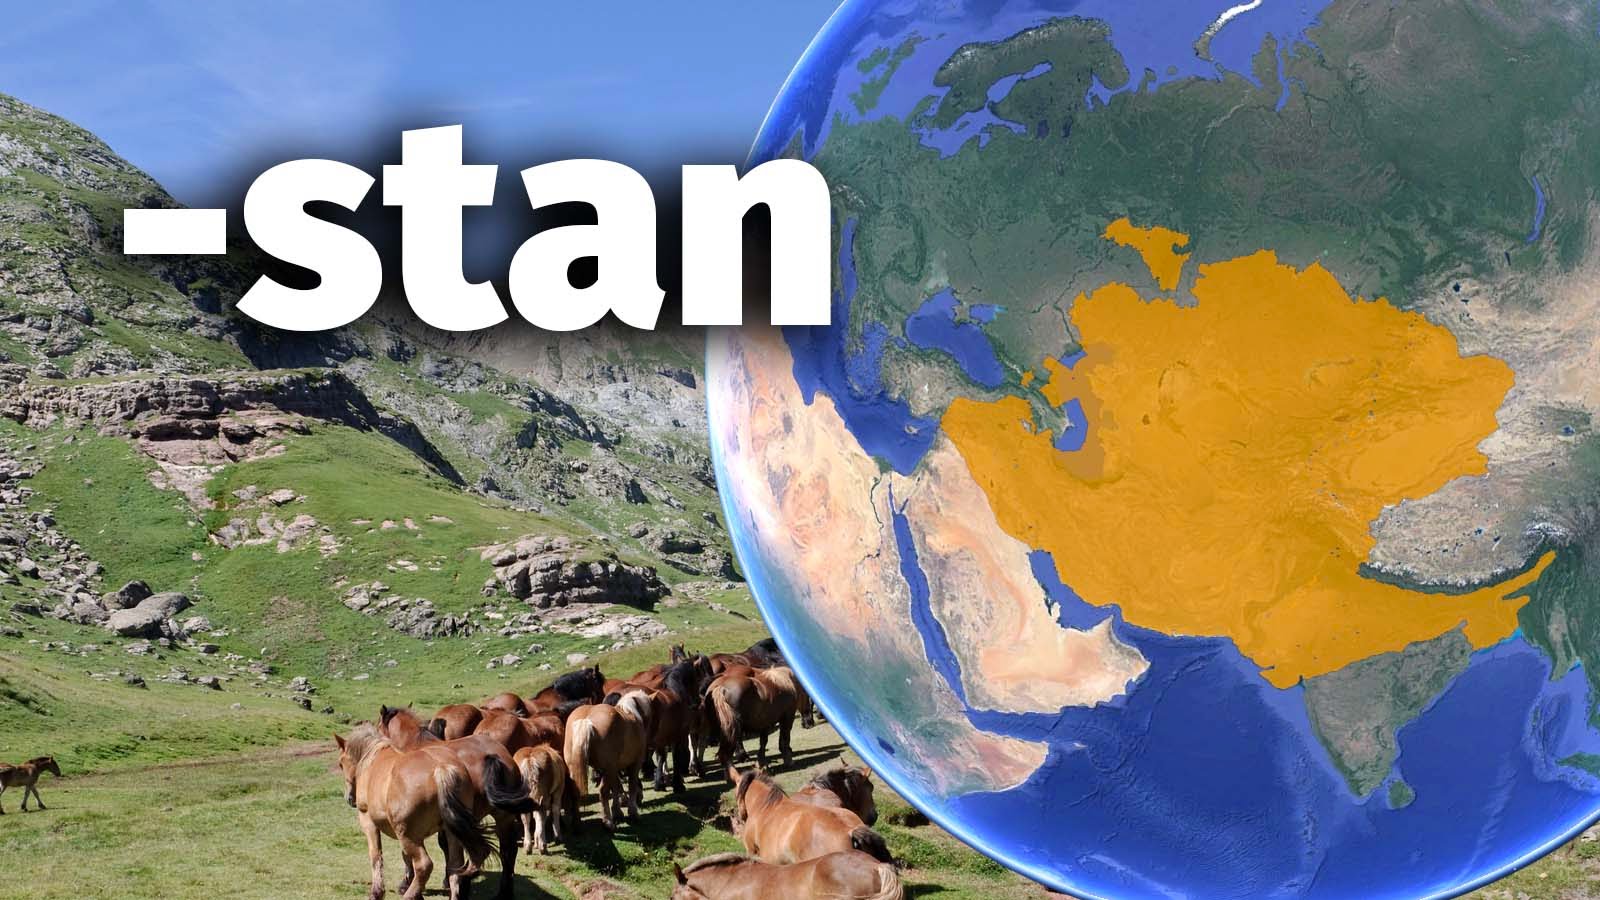 Što znači “stan” u nazivima država kao što su Kazahstan, Pakistan, Kirgistan…